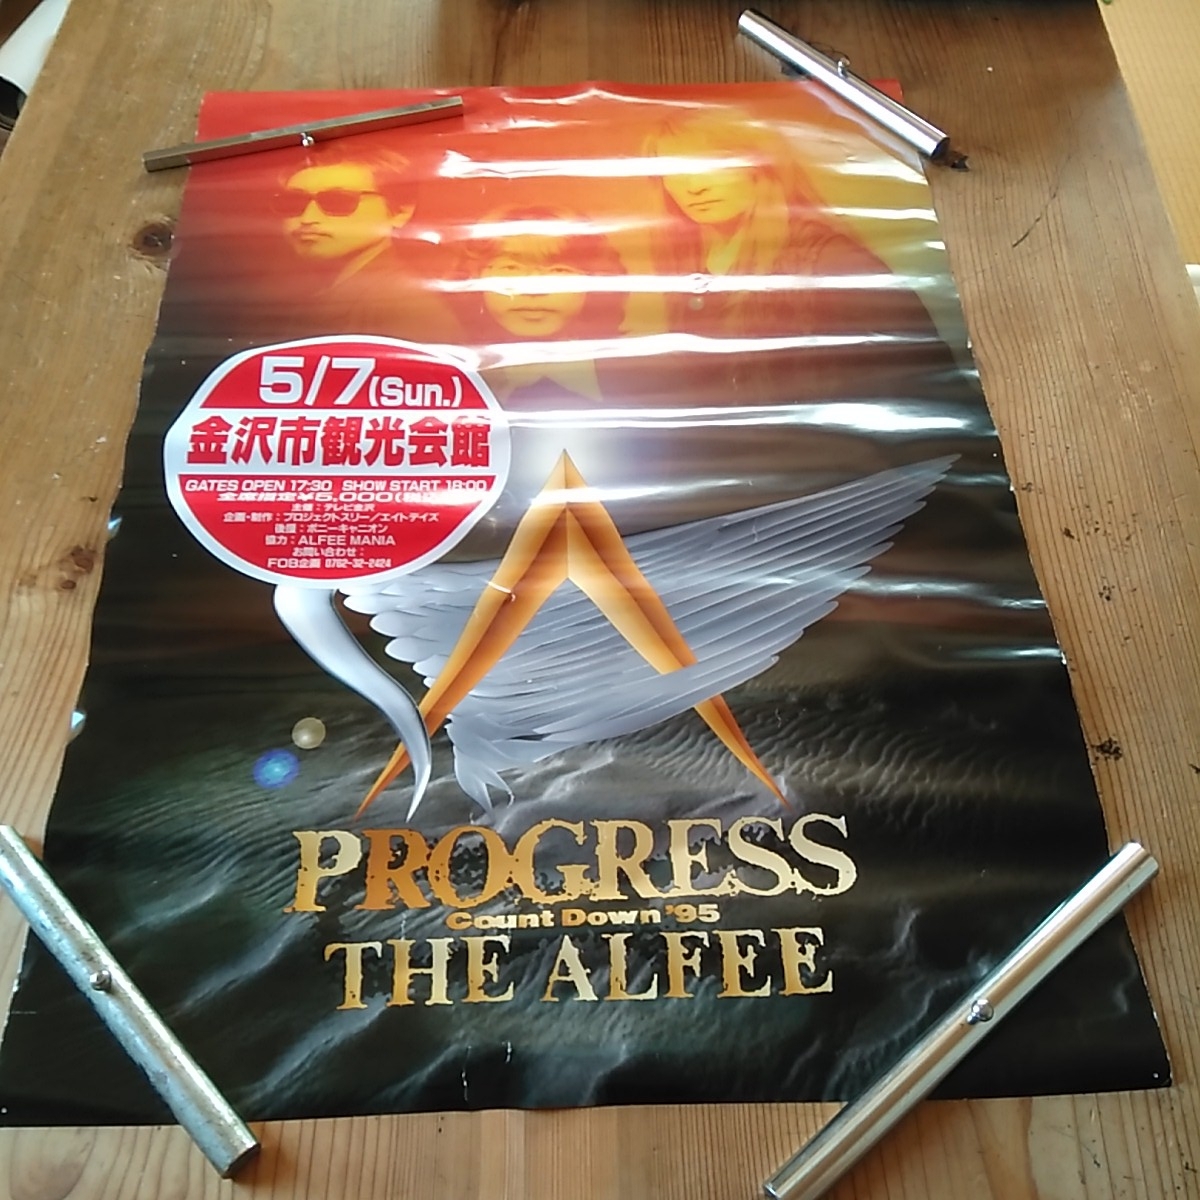 高級品市場 ALFEE THE 2020コンサート告知非売品ポスター アルフィー